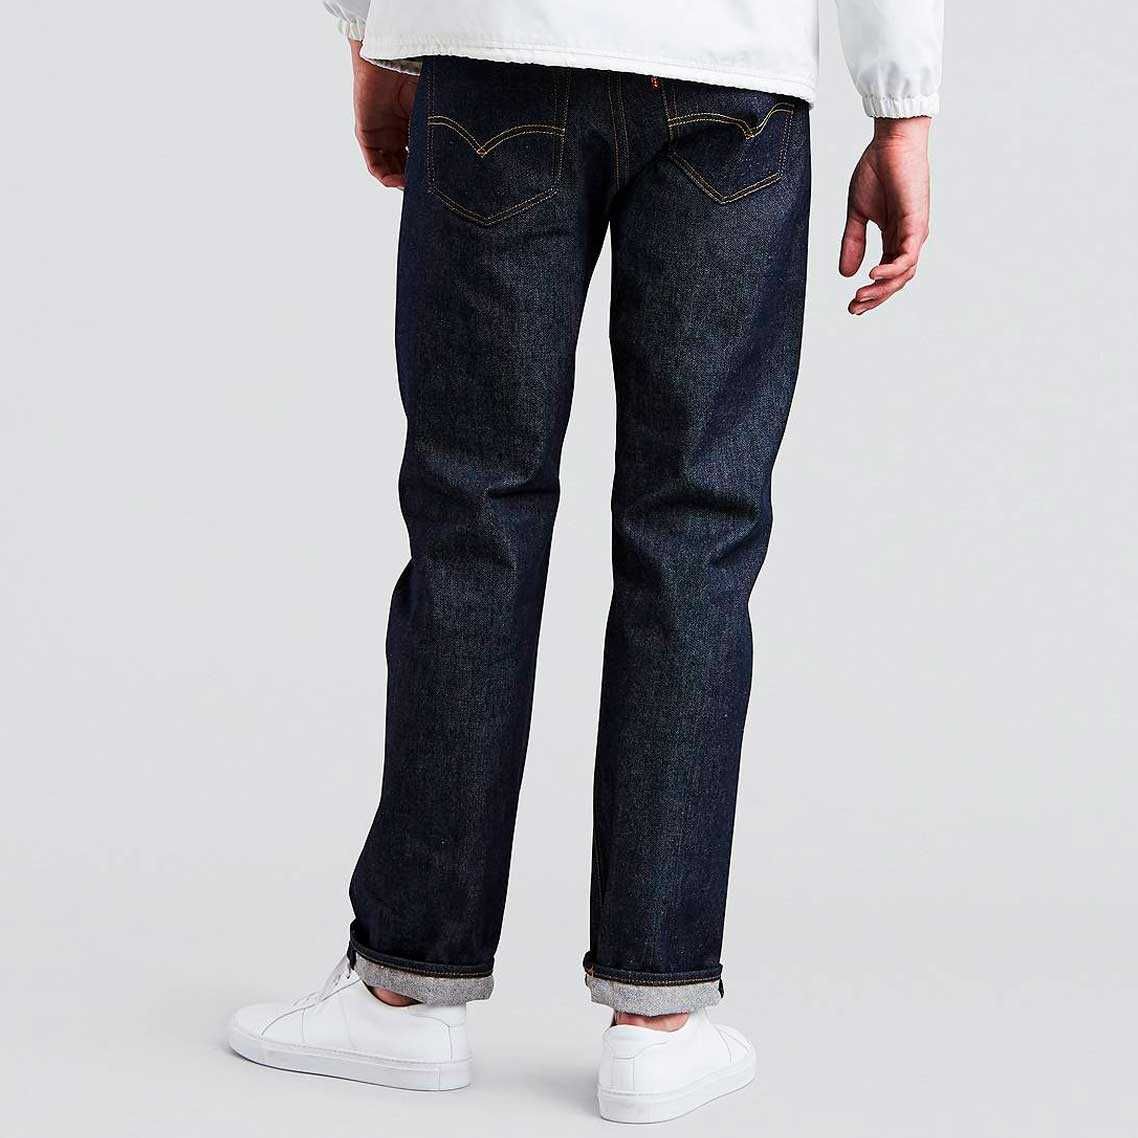 Мужские джинсы Levis 501 Original Shrink-to-Fit 005010000 сырой деним